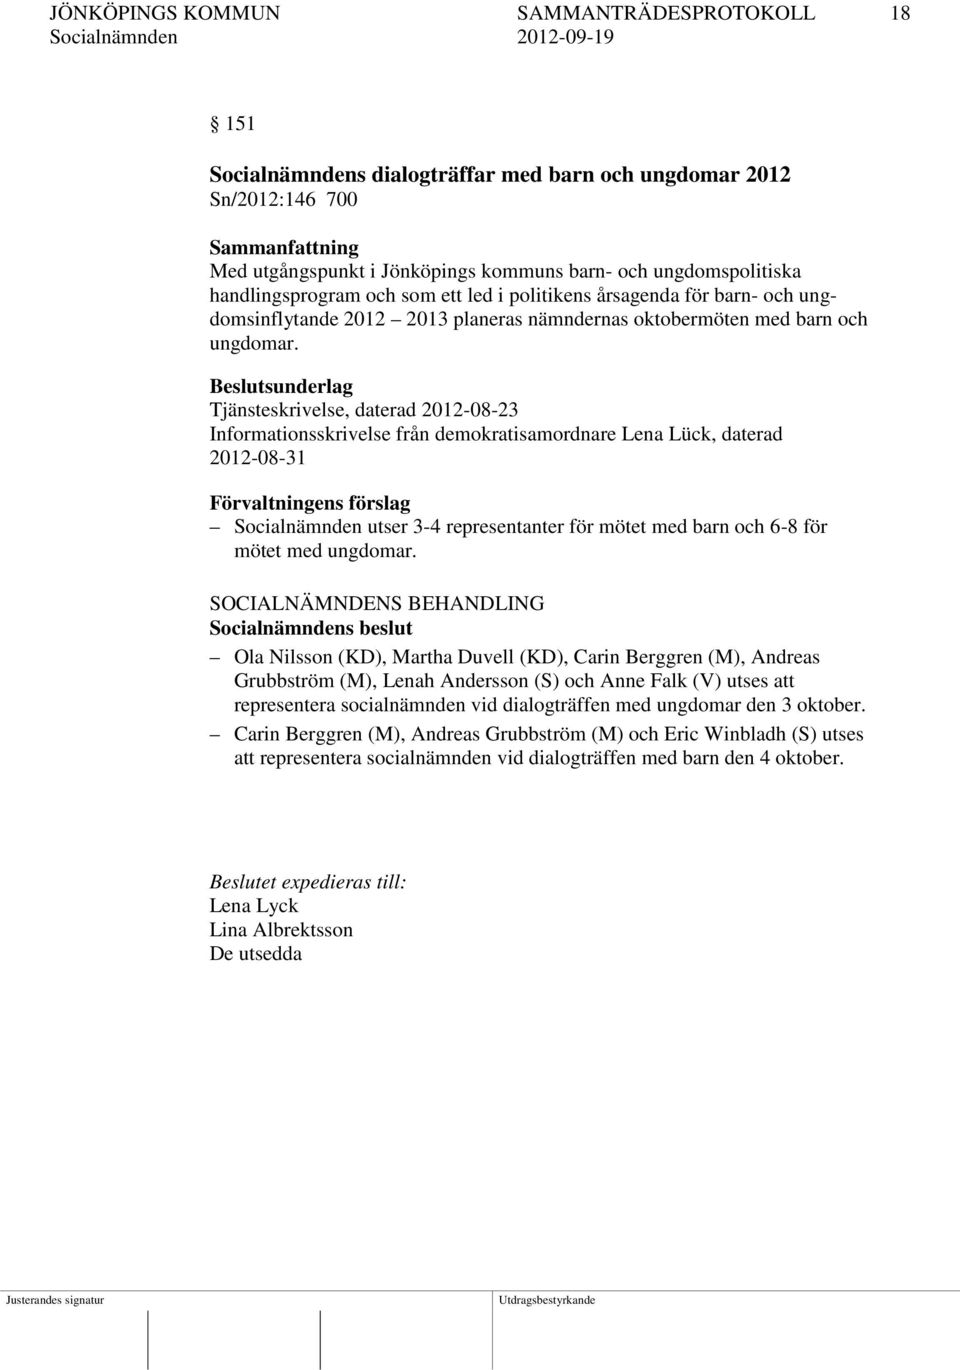 Beslutsunderlag Tjänsteskrivelse, daterad 2012-08-23 Informationsskrivelse från demokratisamordnare Lena Lück, daterad 2012-08-31 Förvaltningens förslag Socialnämnden utser 3-4 representanter för